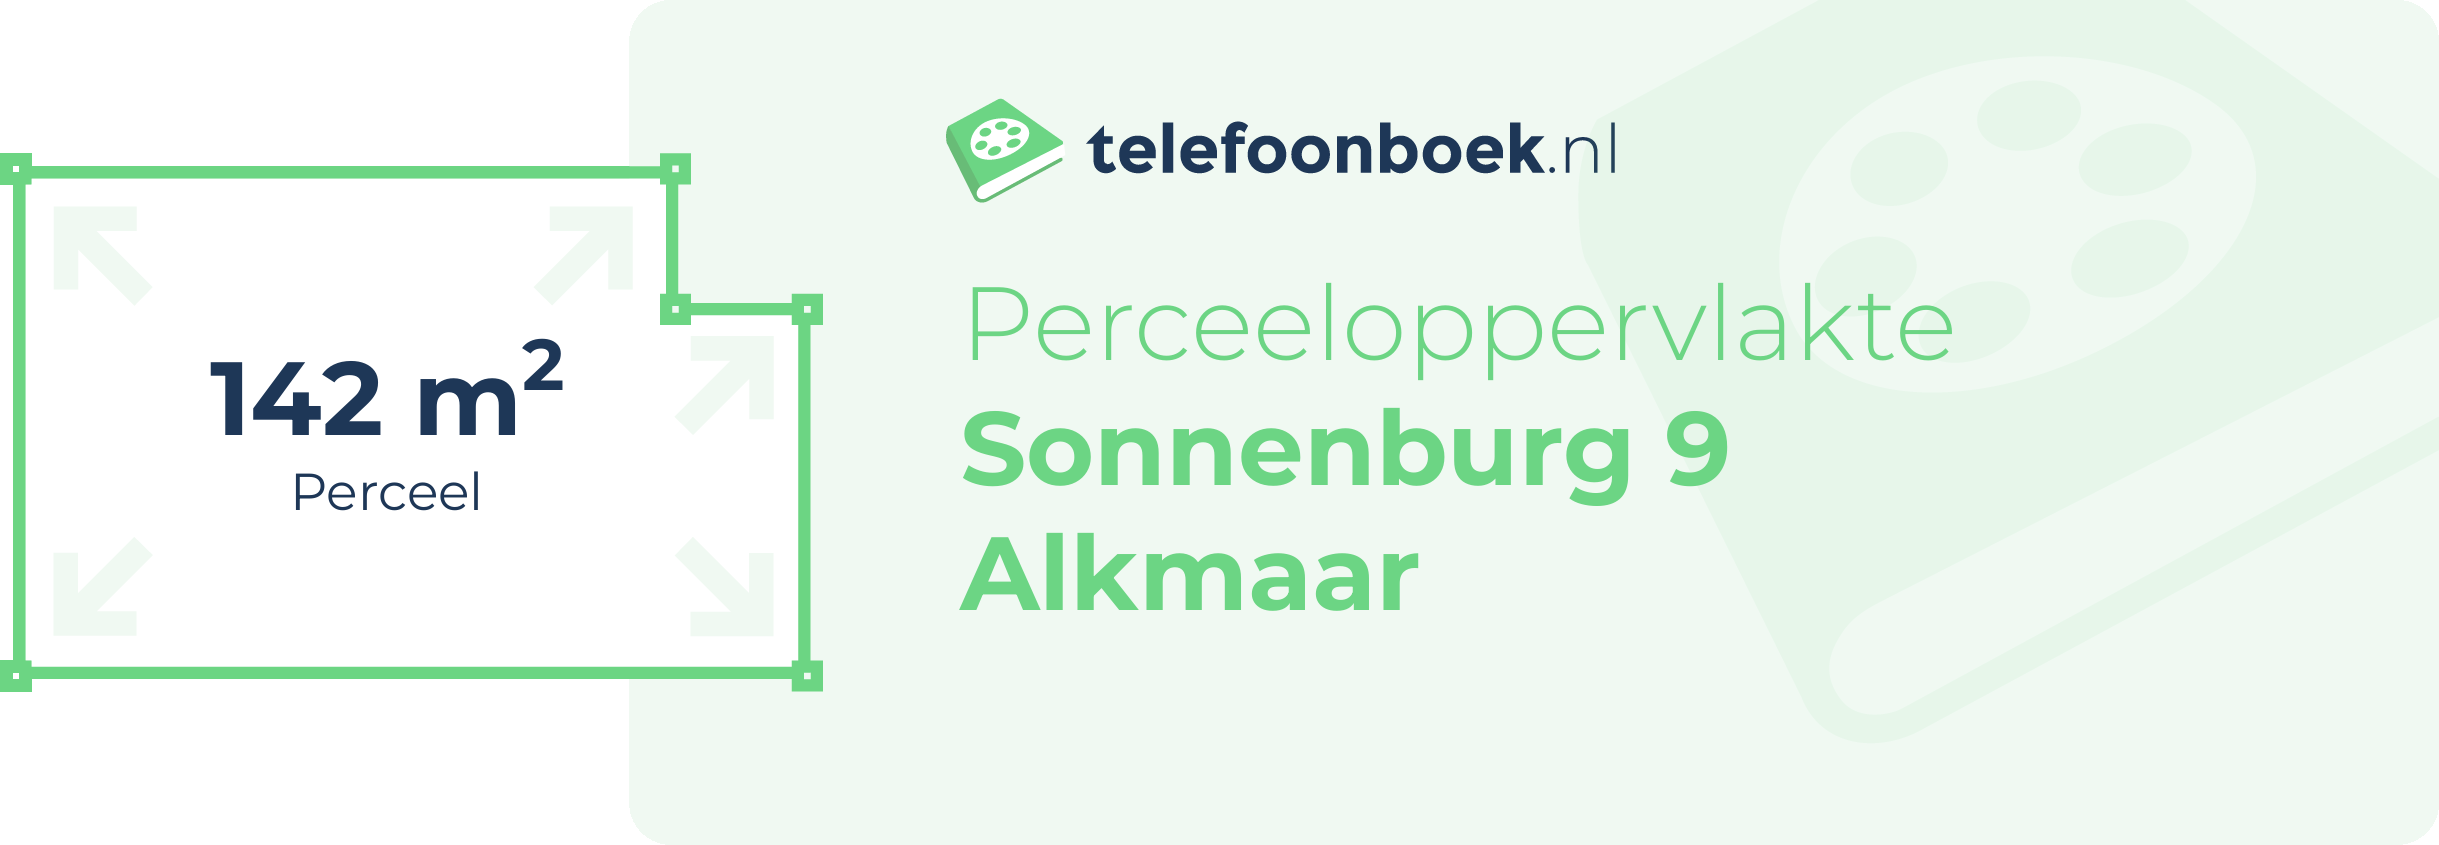 Perceeloppervlakte Sonnenburg 9 Alkmaar